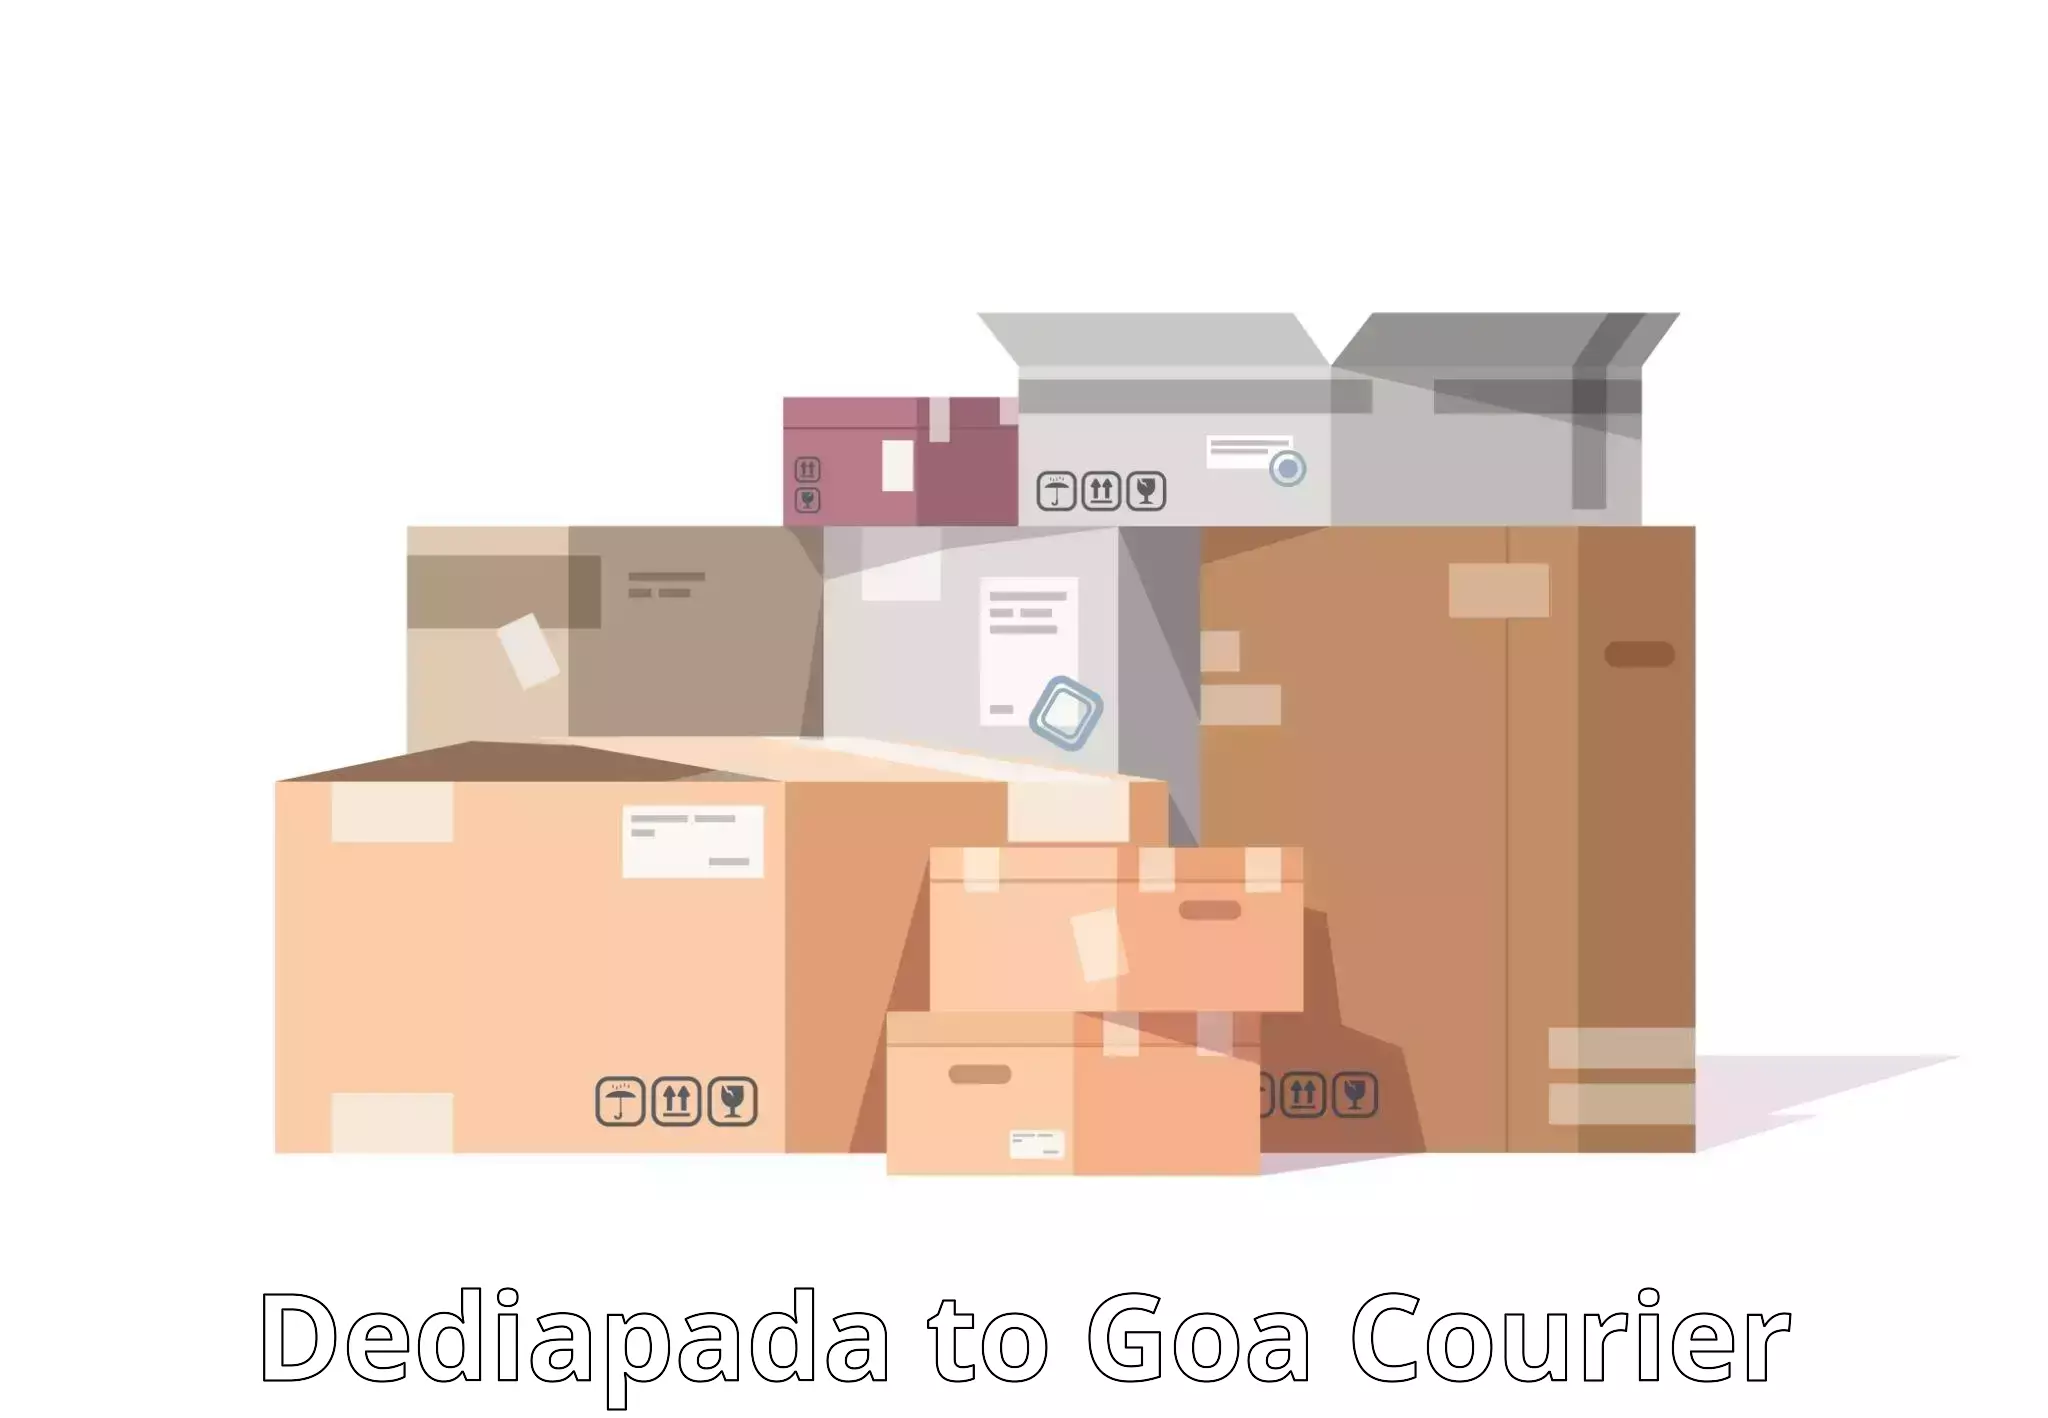 Quality courier services Dediapada to Vasco da Gama